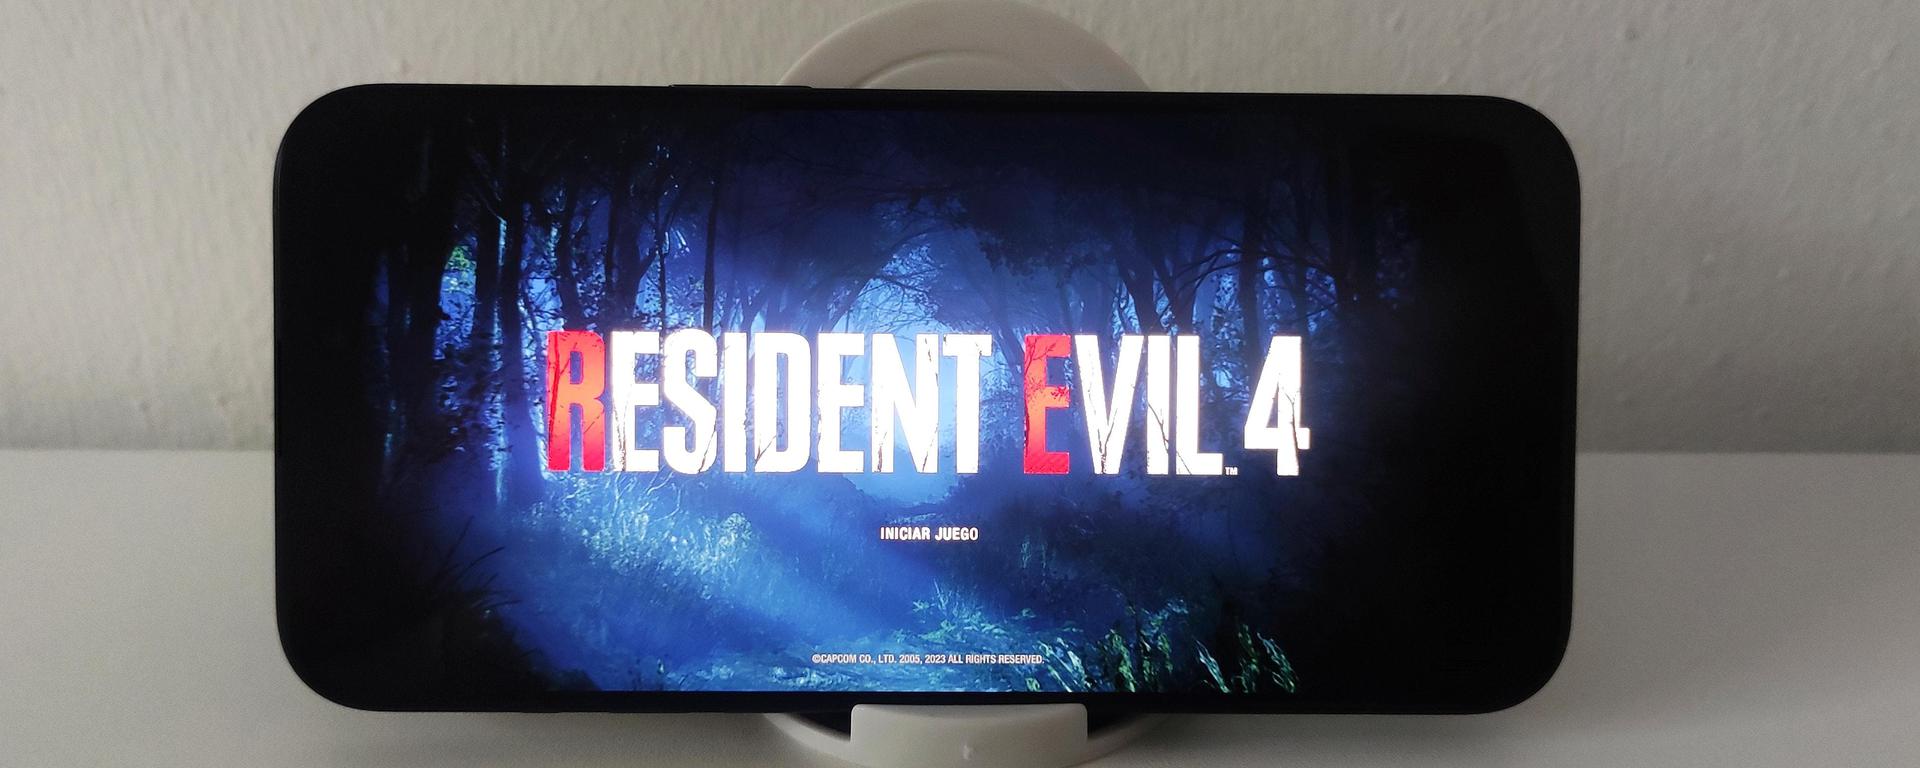 Probamos Resident Evil 4 Remake en un iPhone 15 Pro Max, ¿es la misma experiencia que en una consola?